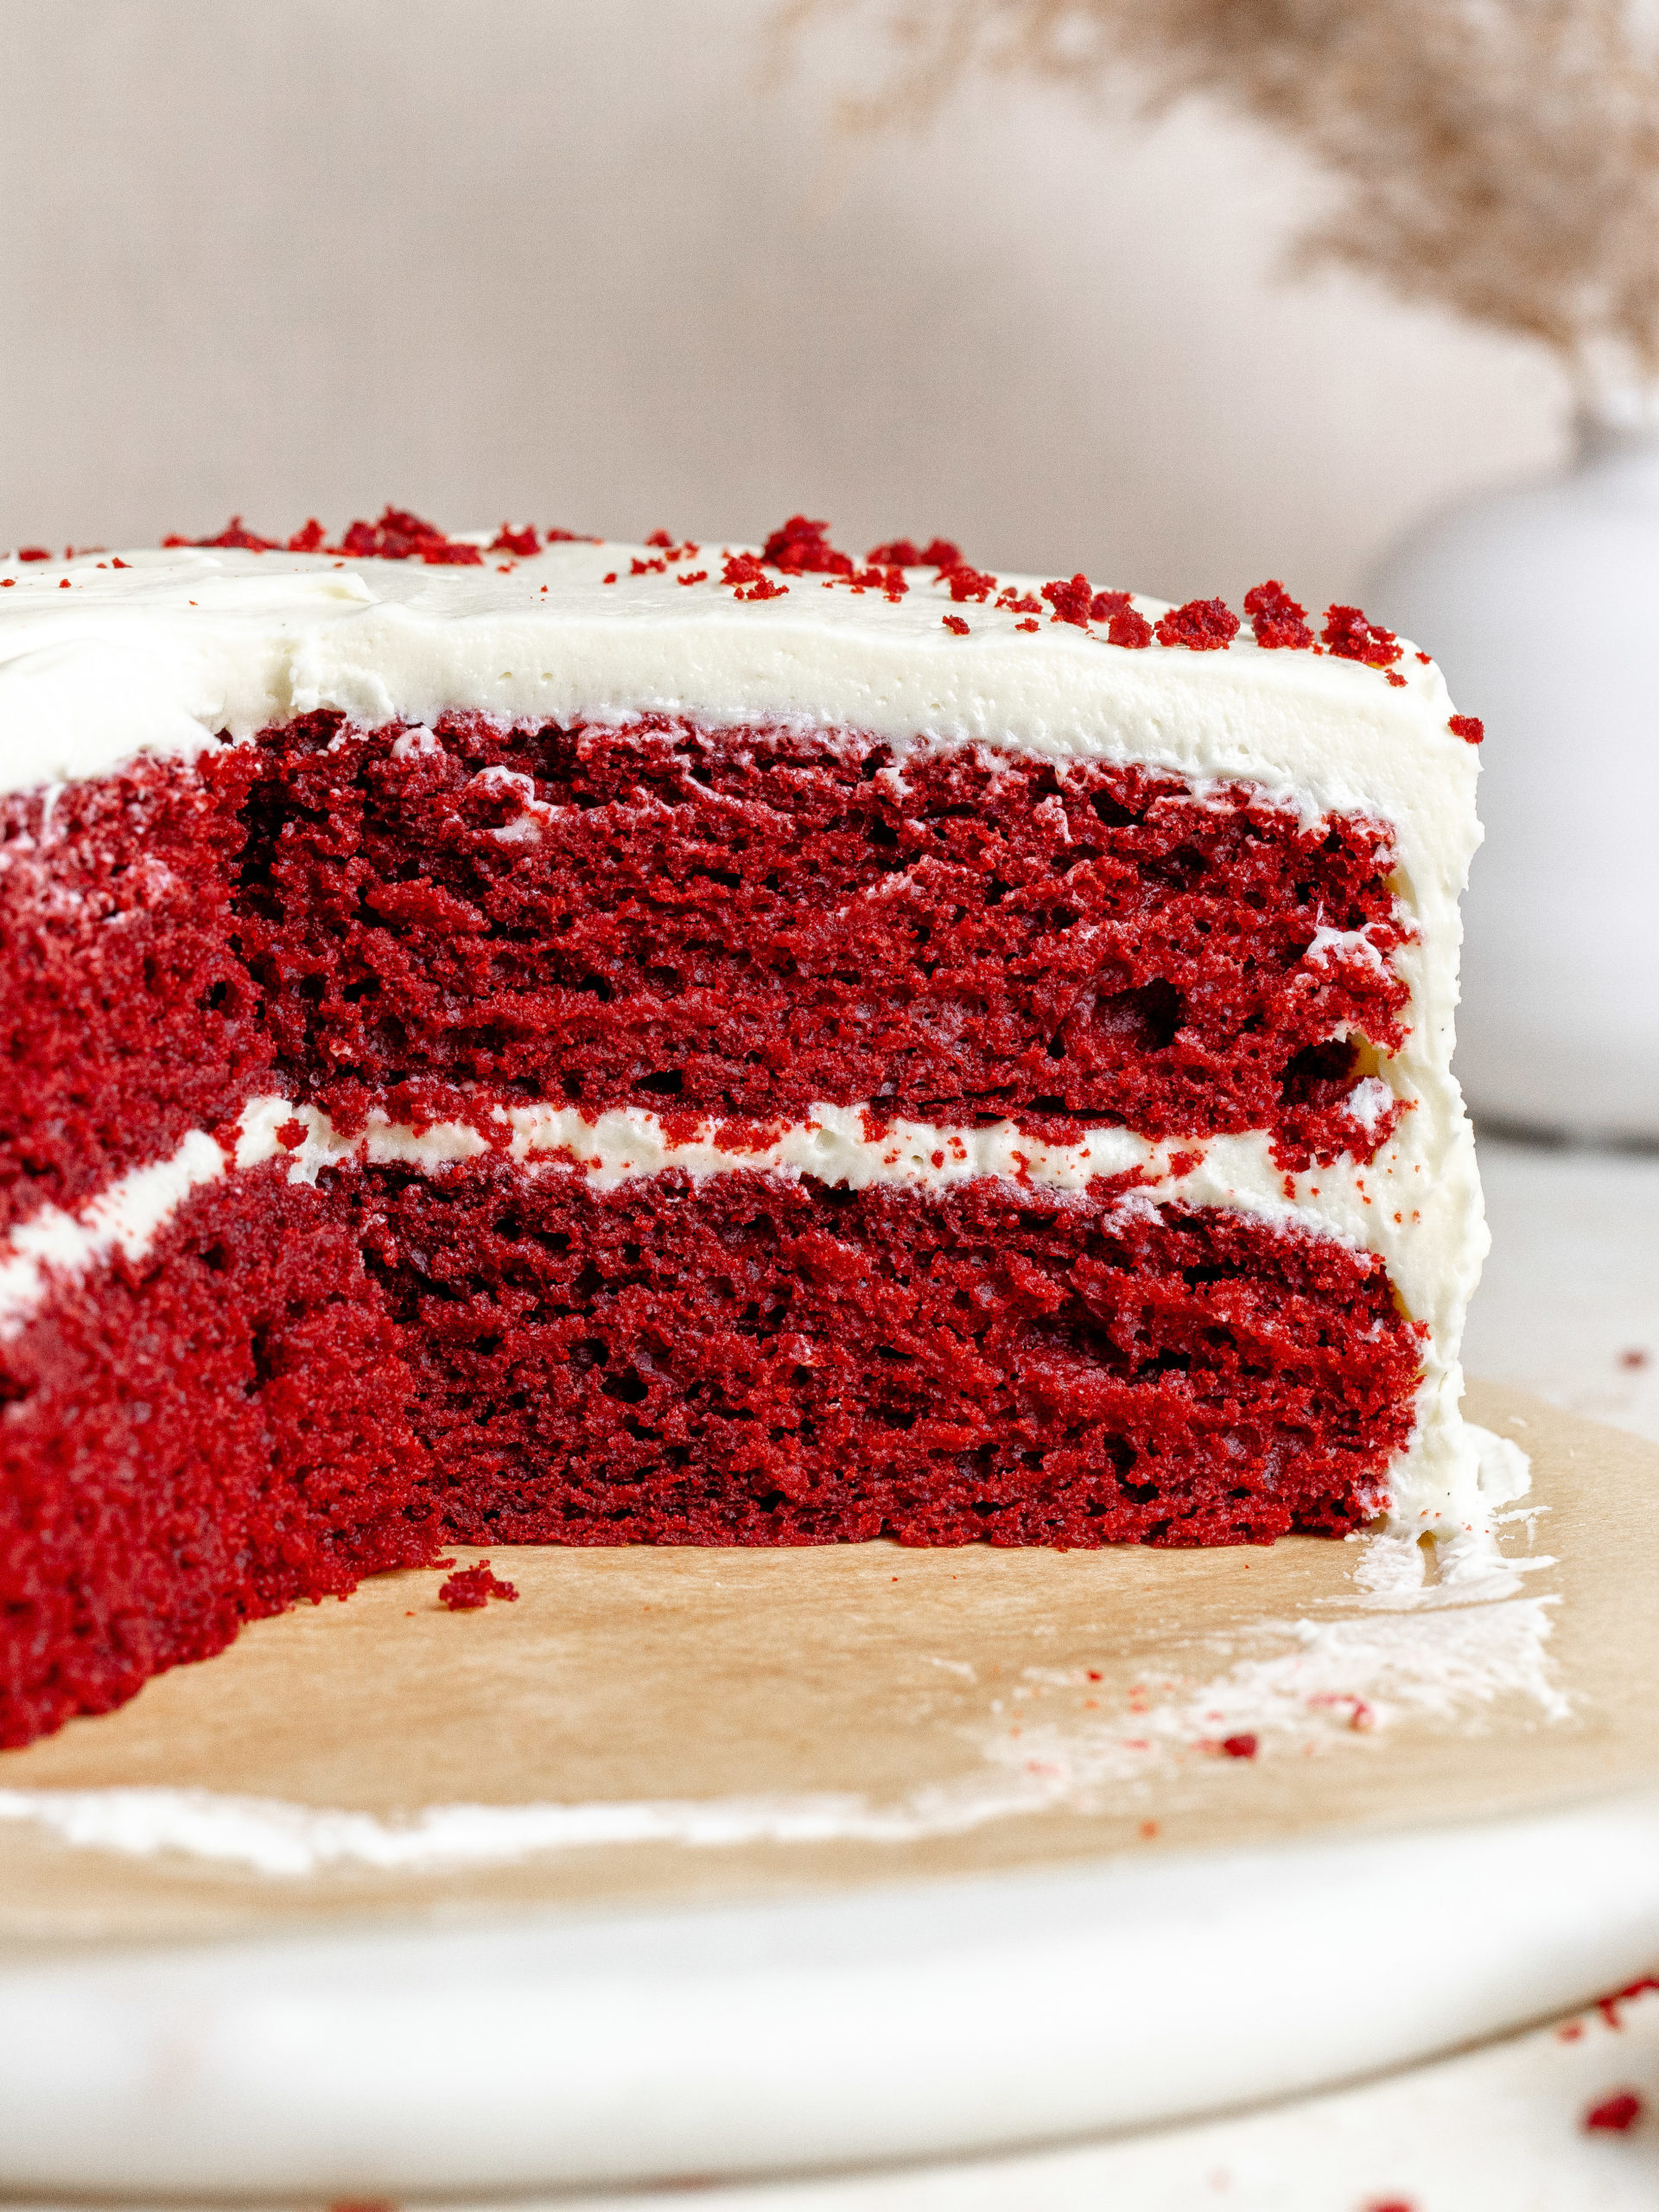 Best Red Velvet Cake (One Bowl Recipe)